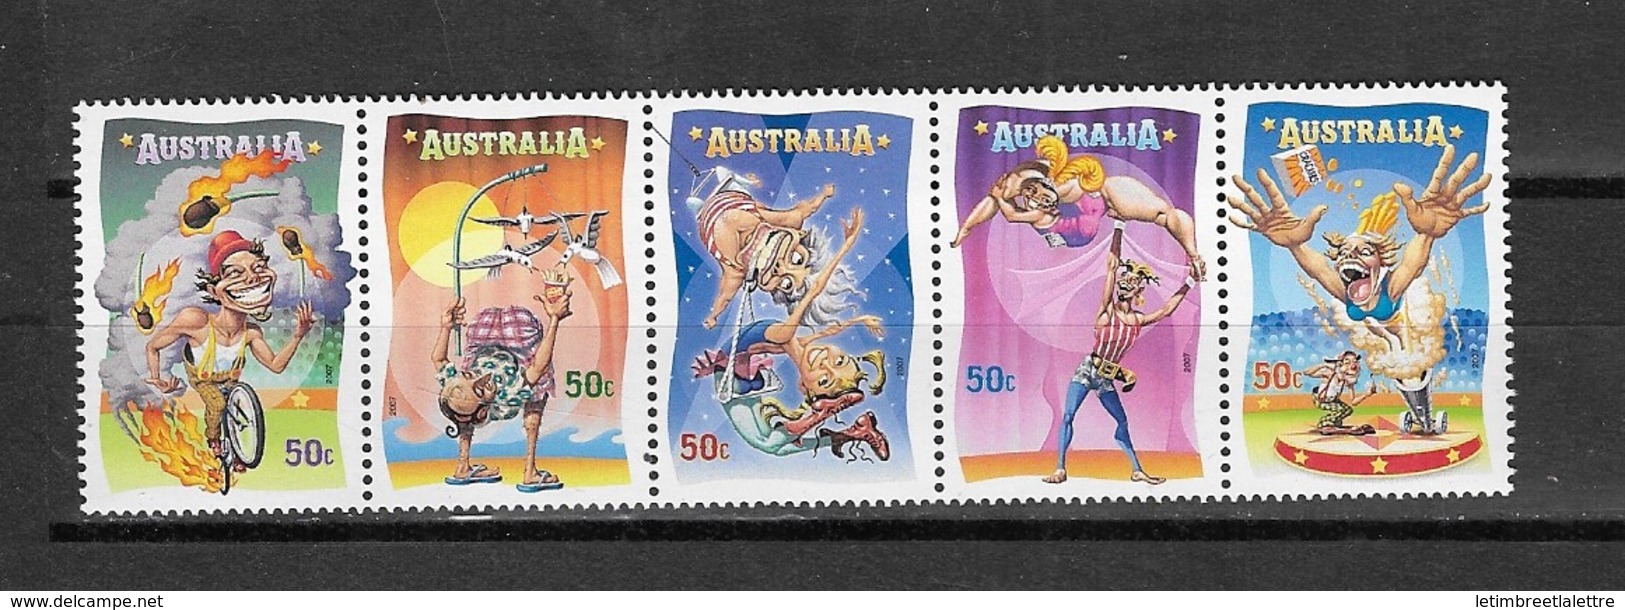 AUSTRALIE N° 2713 à 2717** - Mint Stamps